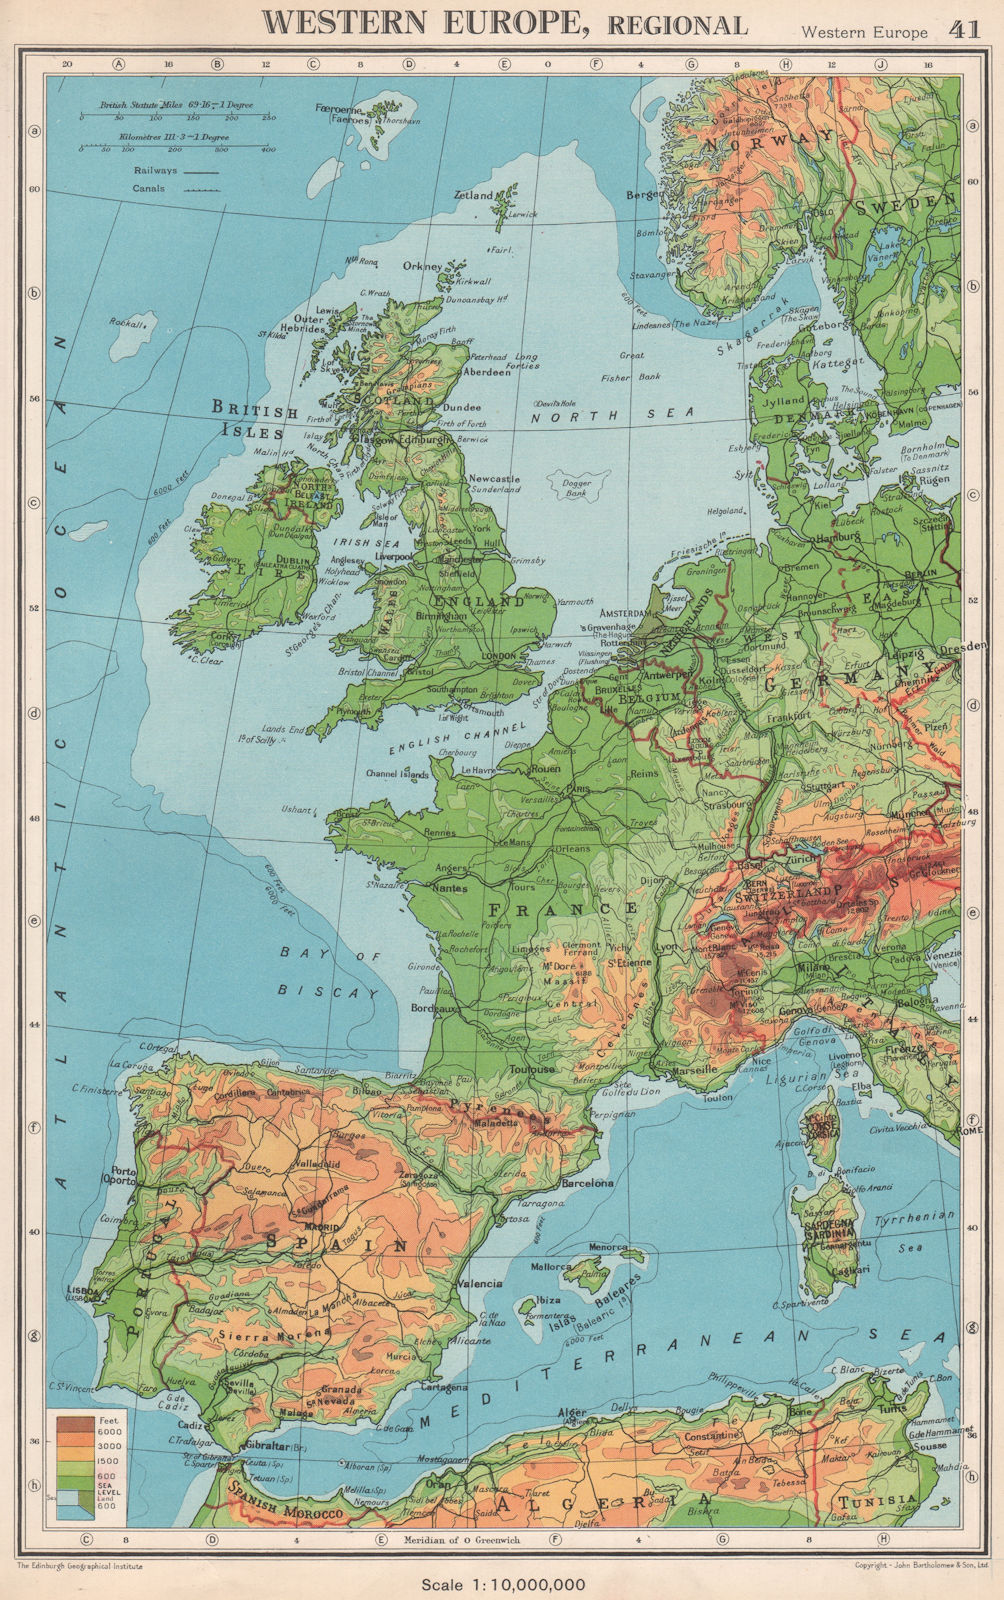 WESTERN EUROPE. Physical & main railways. BARTHOLOMEW 1952 old vintage map